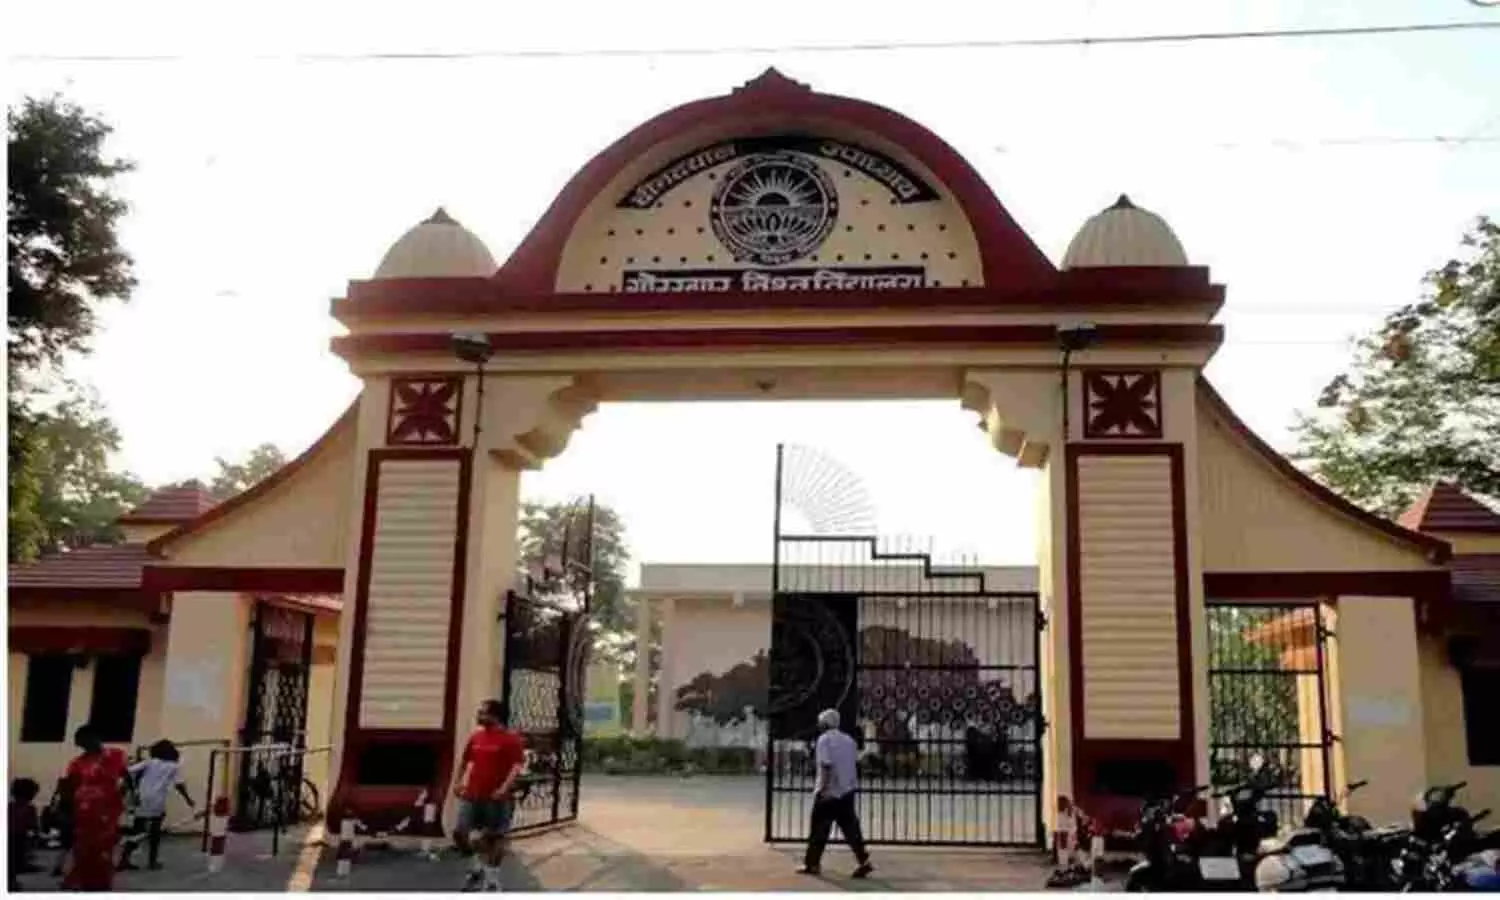 Gorakhpur University